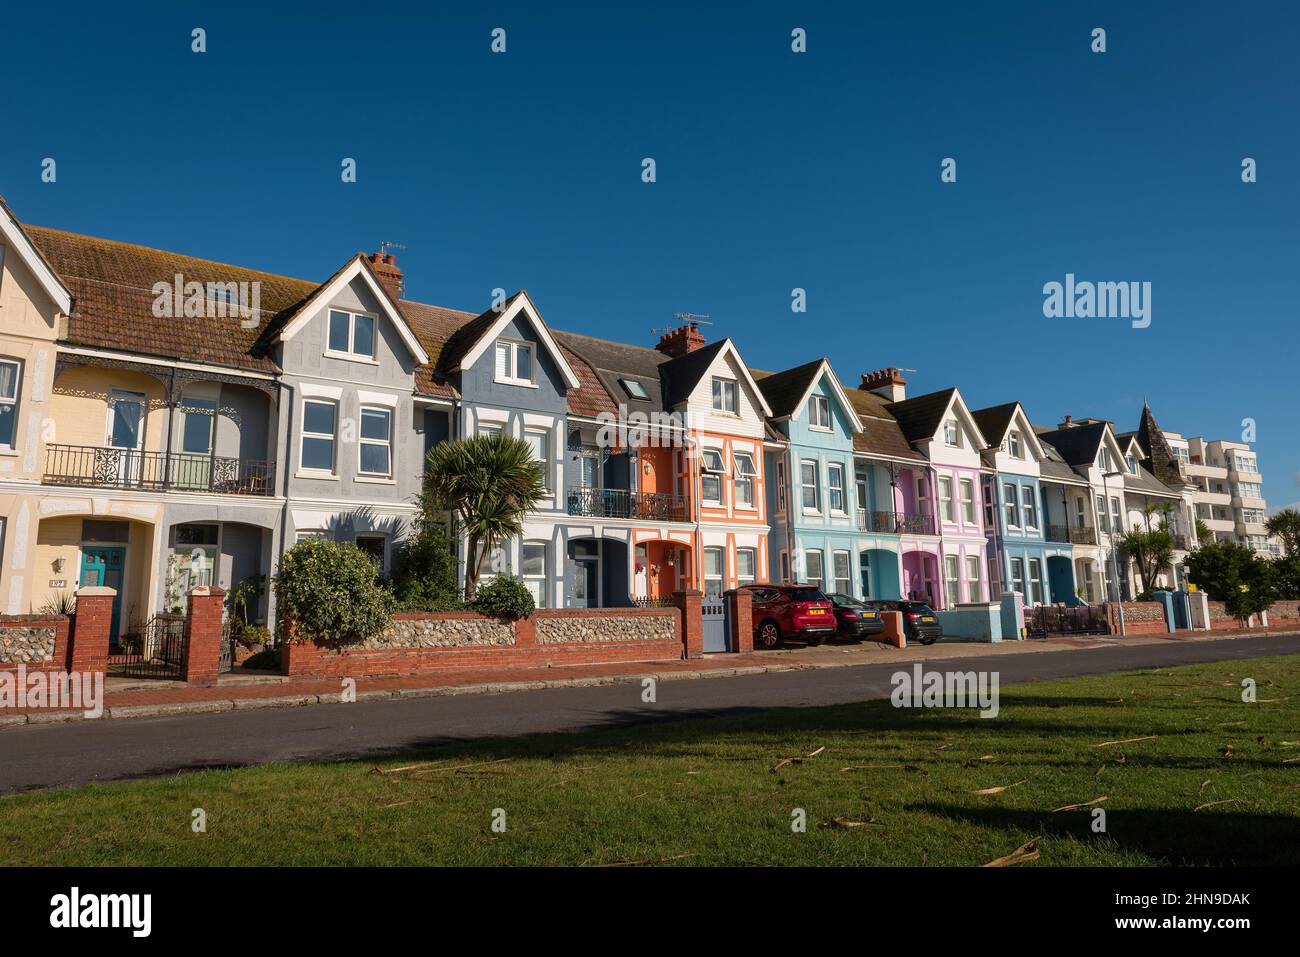 Maisons en terrasse édouardiennes colorées sur le front de mer de Worthing, West Sussex, Royaume-Uni Banque D'Images